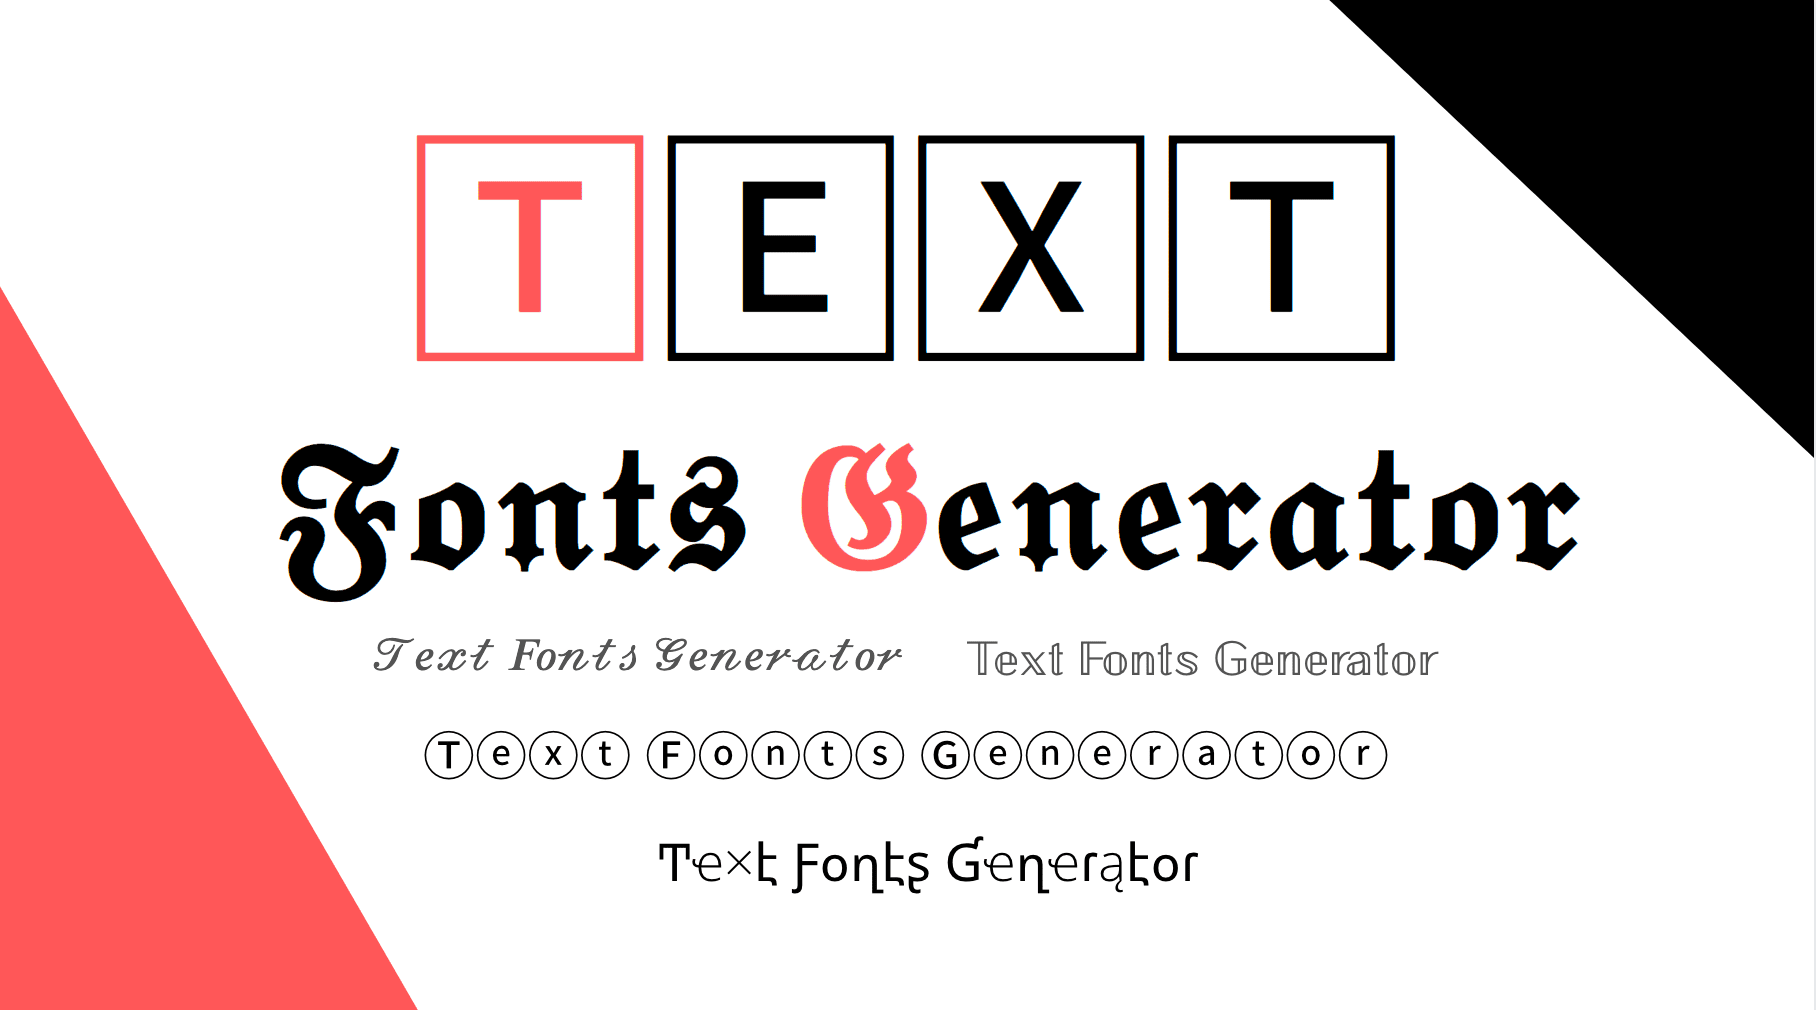 Cool font generators